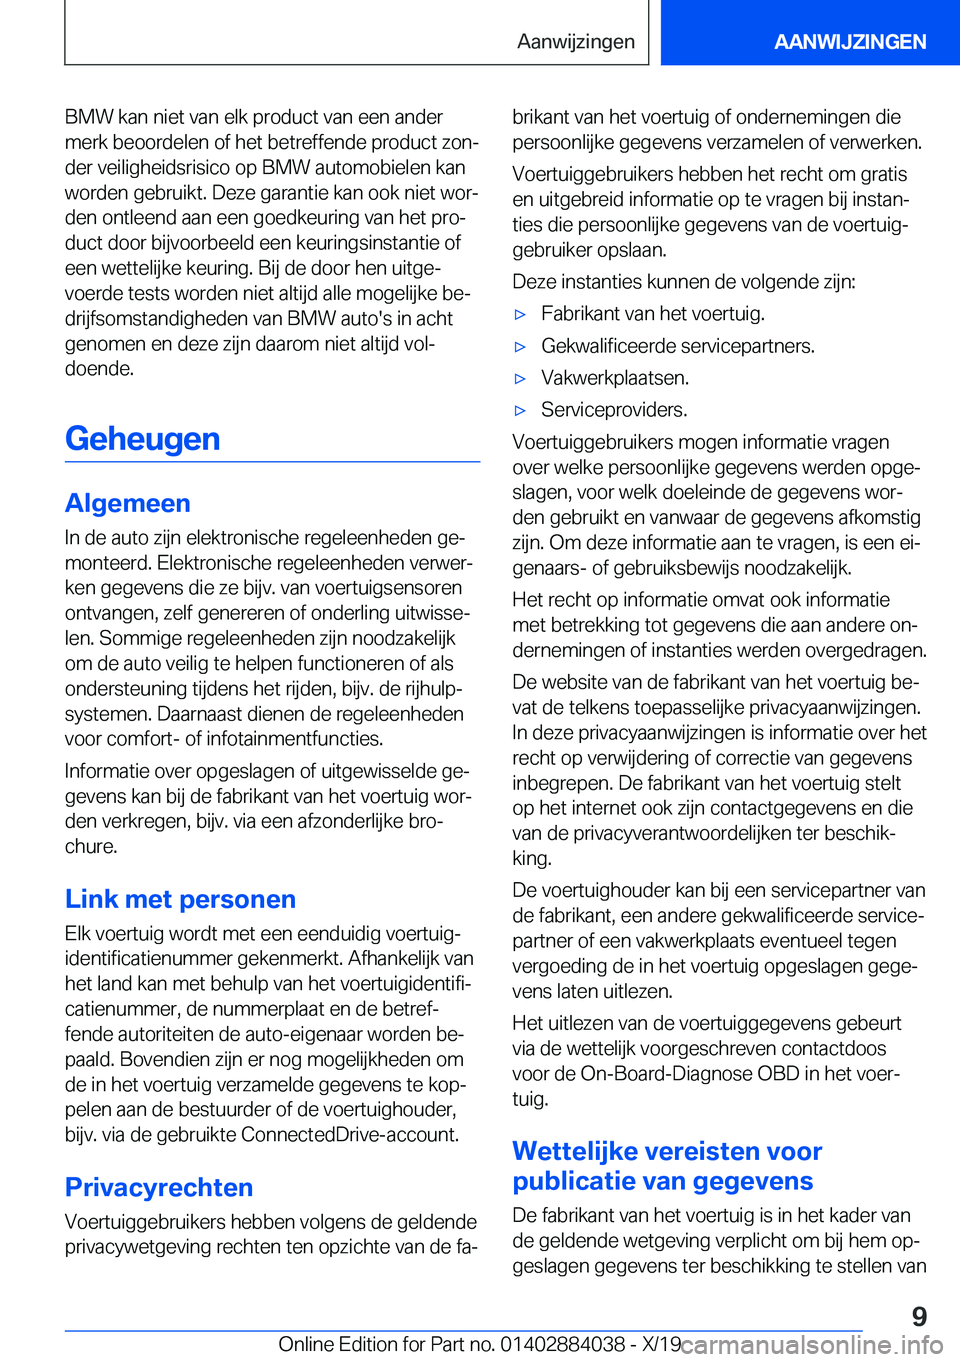 BMW 7 SERIES 2020  Instructieboekjes (in Dutch) �B�M�W��k�a�n��n�i�e�t��v�a�n��e�l�k��p�r�o�d�u�c�t��v�a�n��e�e�n��a�n�d�e�r�m�e�r�k��b�e�o�o�r�d�e�l�e�n��o�f��h�e�t��b�e�t�r�e�f�f�e�n�d�e��p�r�o�d�u�c�t��z�o�nj
�d�e�r��v�e�i�l�i�g�